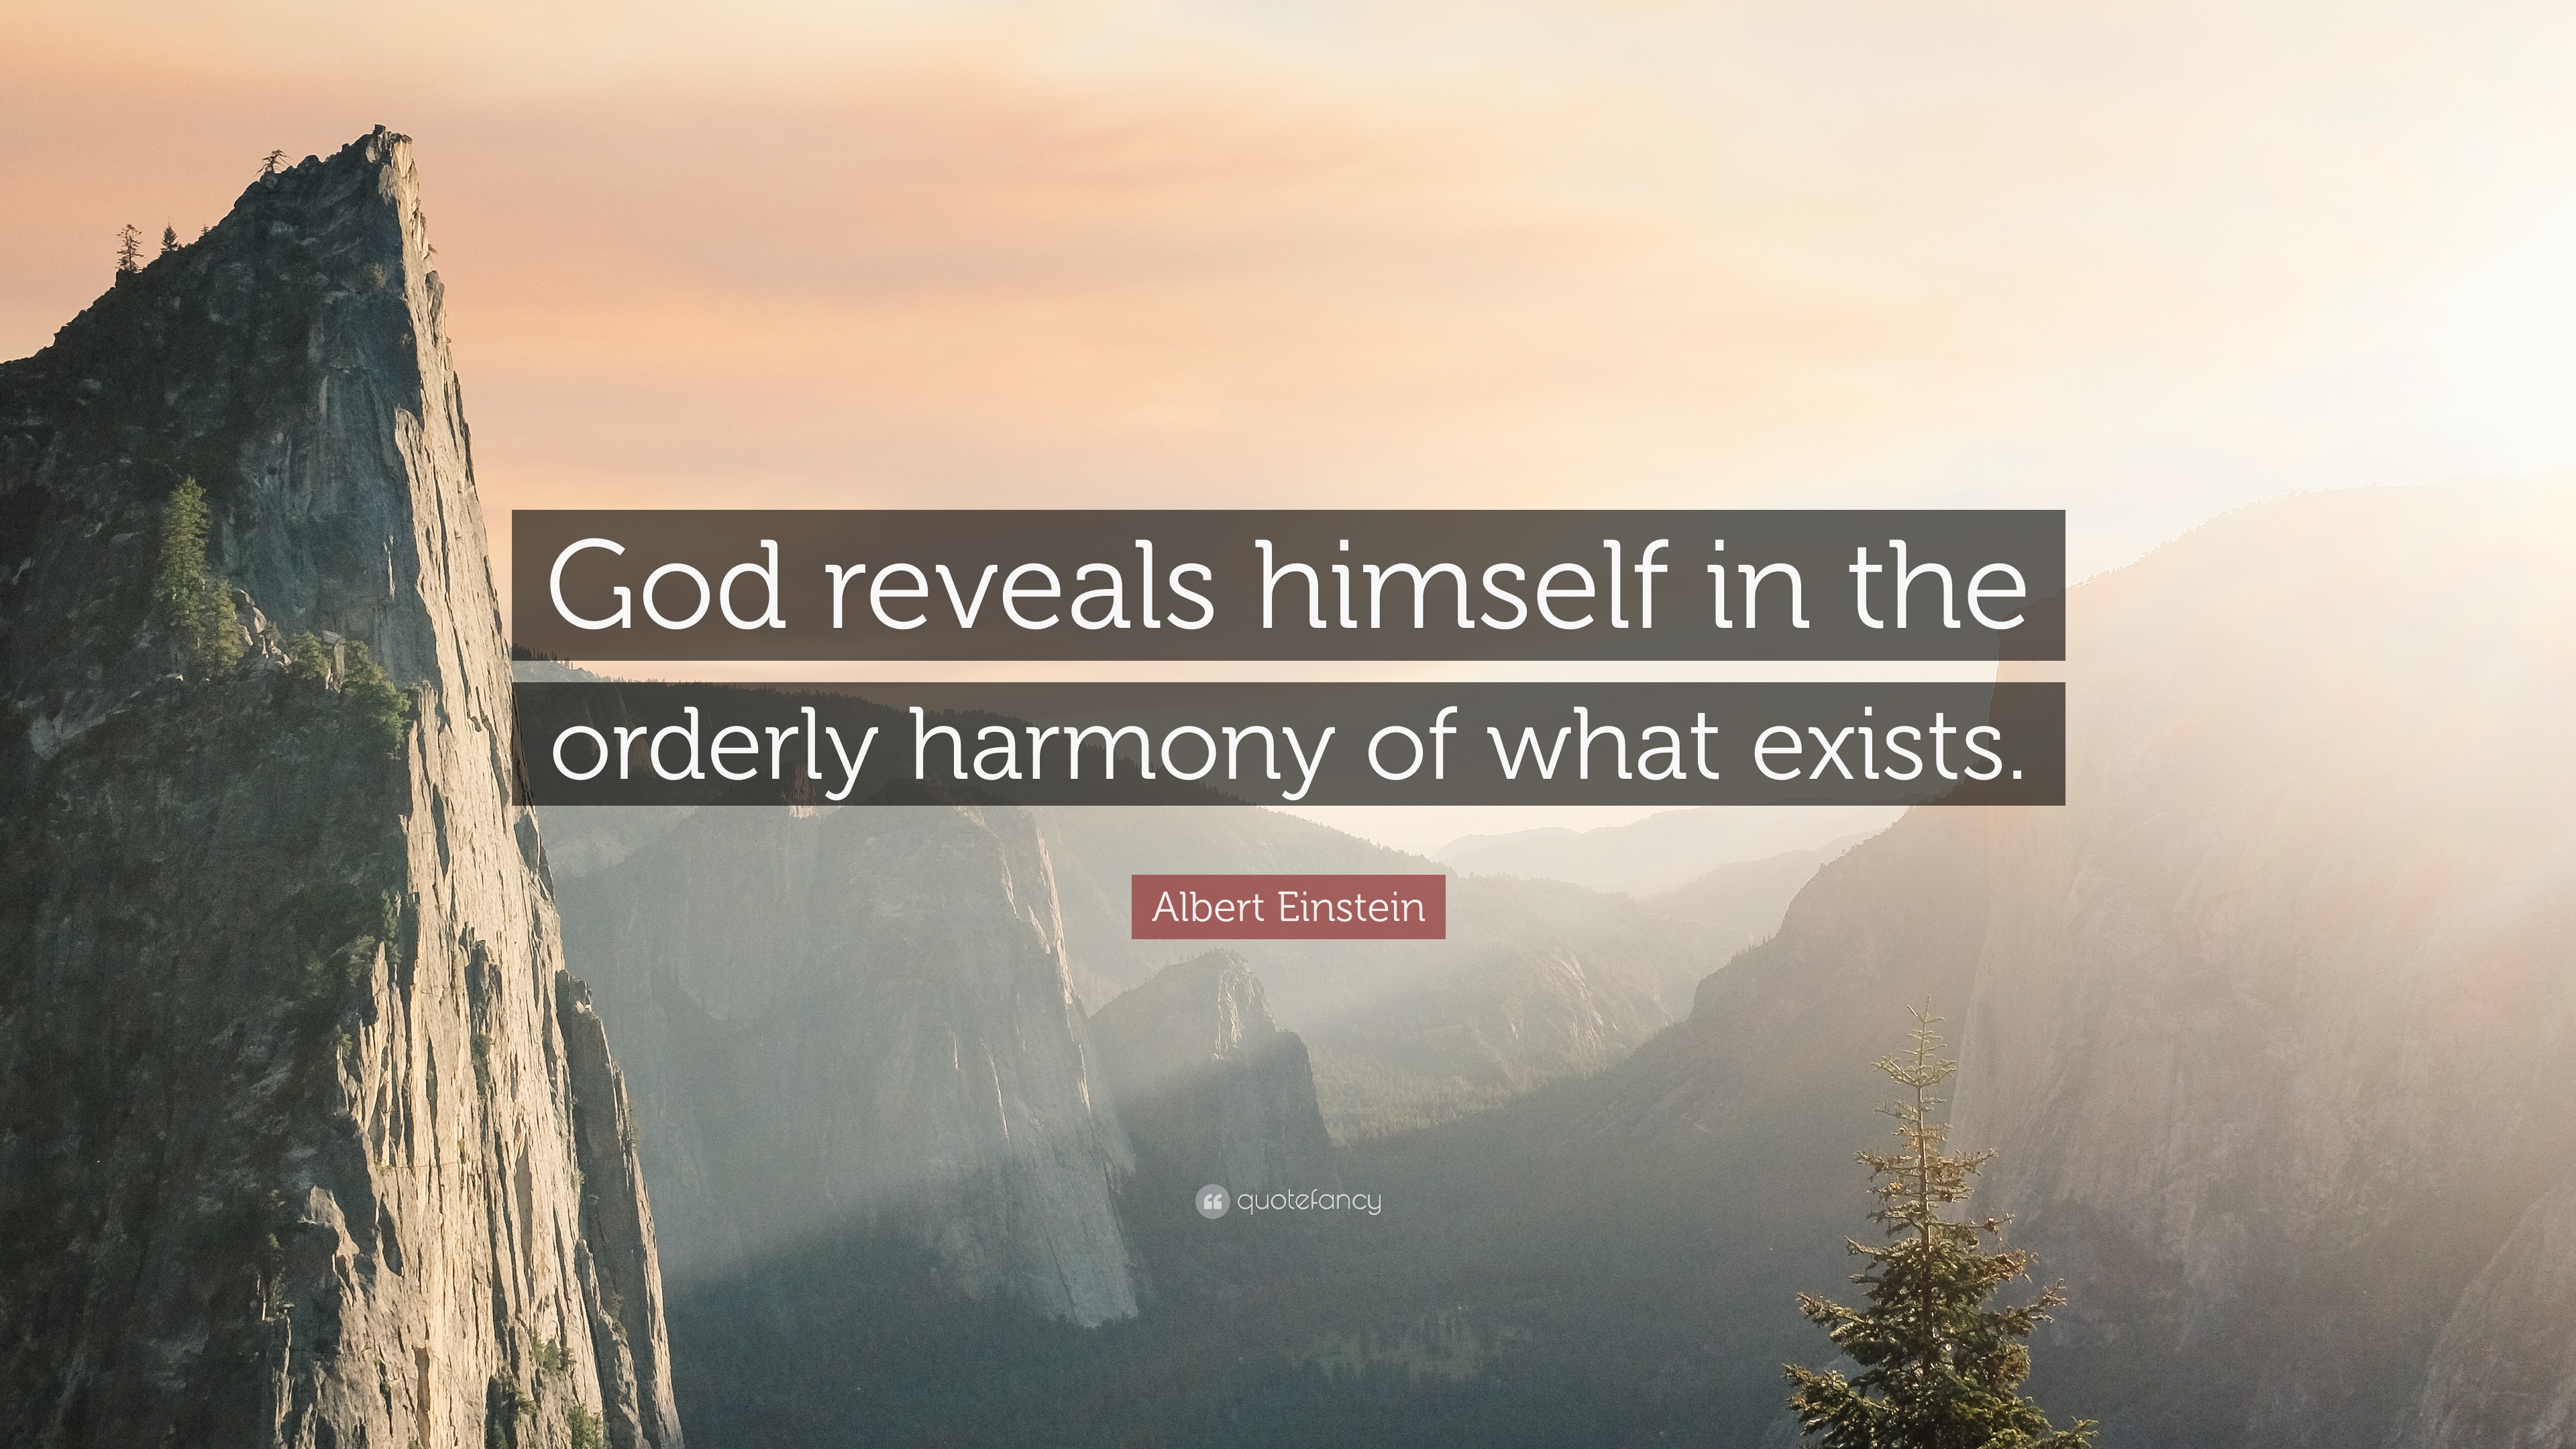 einstein quotes about god